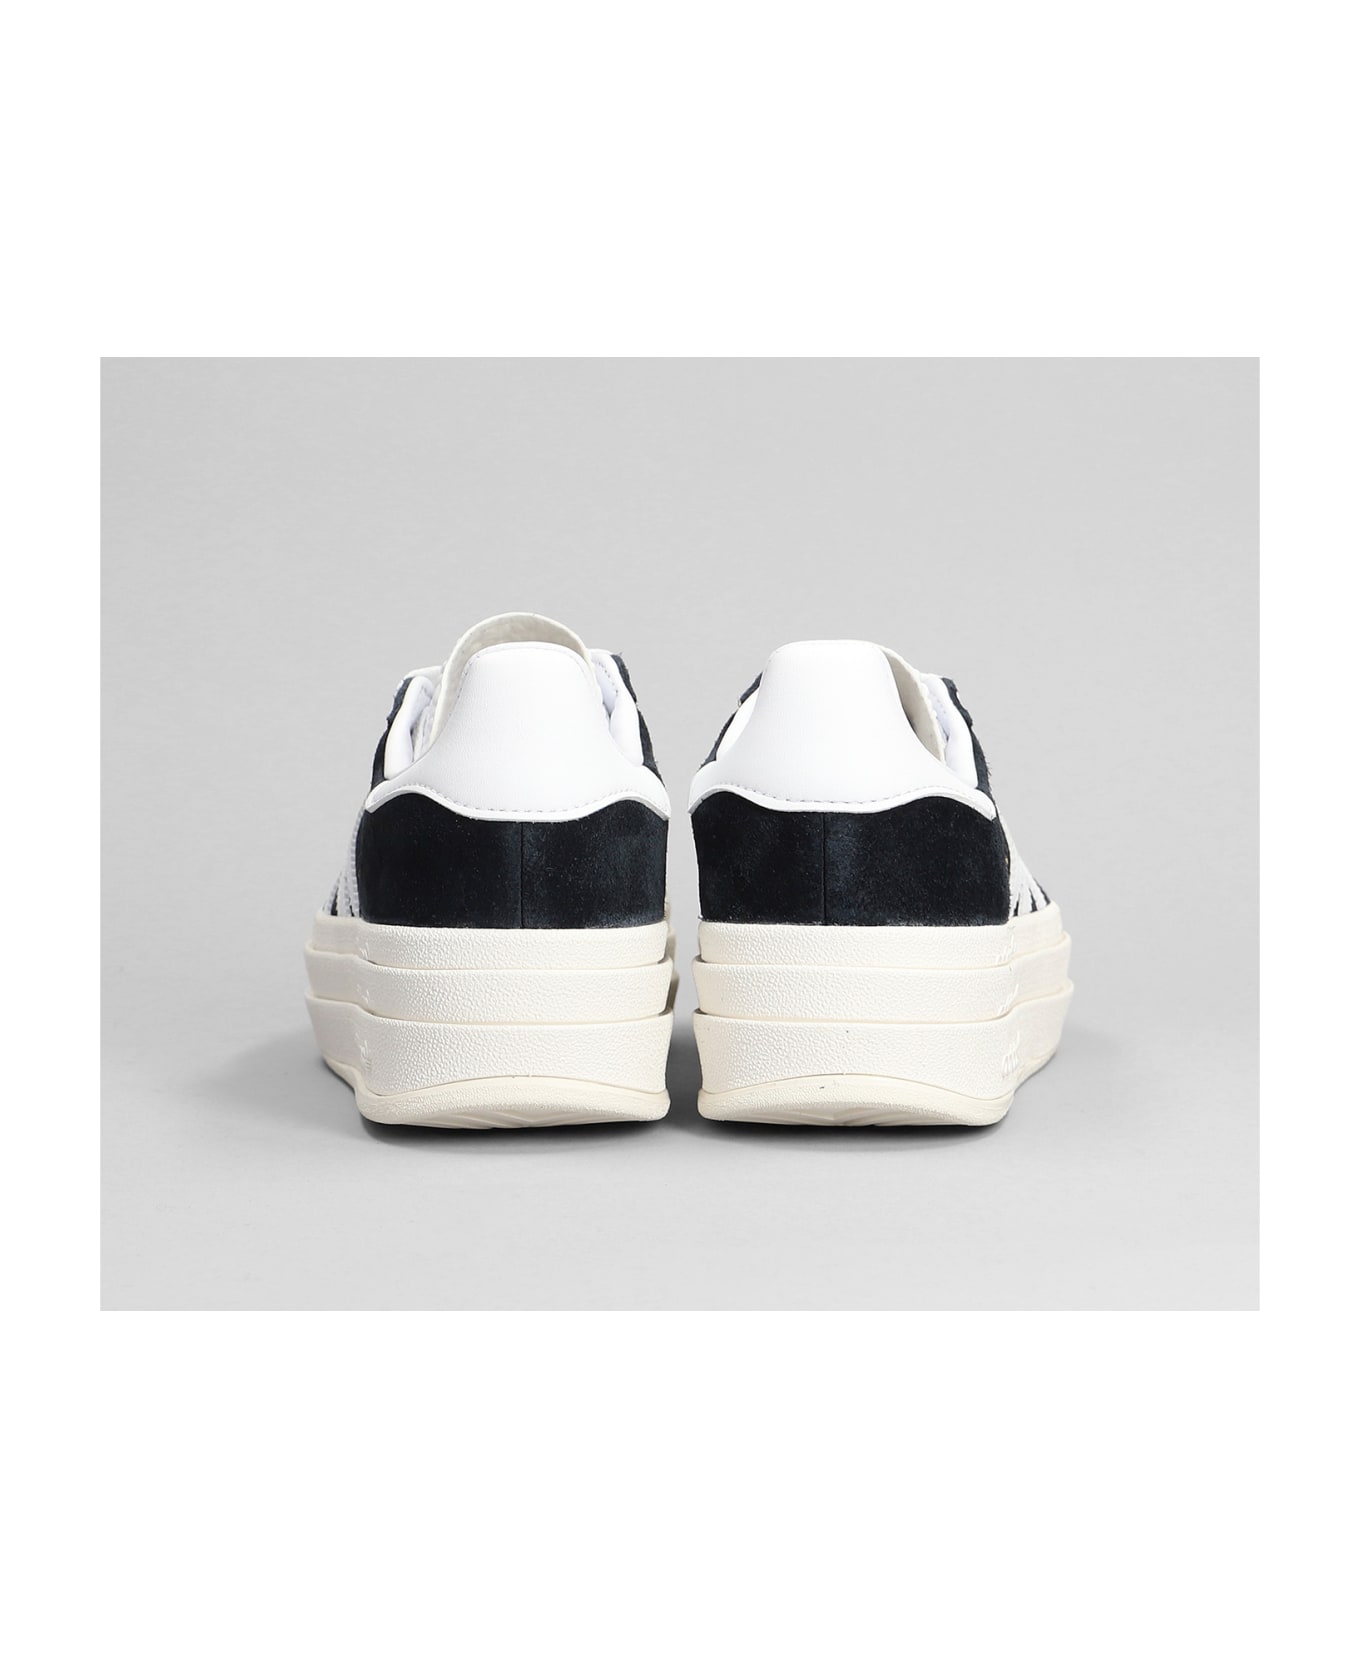 Adidas Originals Gazelle Bold Sneakers In Black Suede - Black